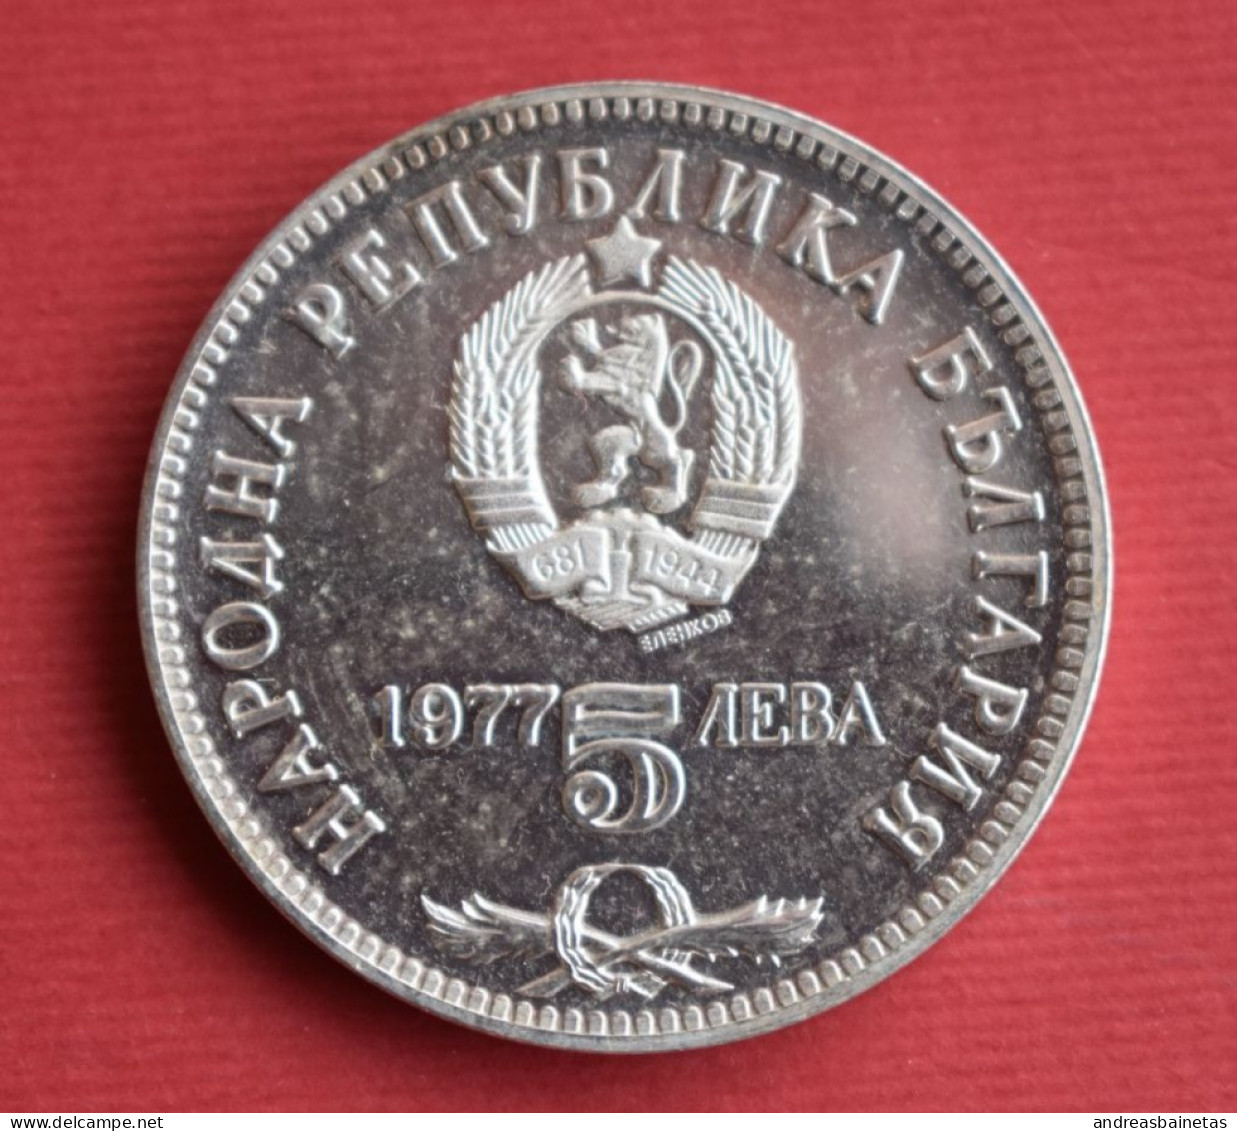 Coins Bulgaria 5 Leva Petko R. Slaveikov	KM# 99 - Bulgaria